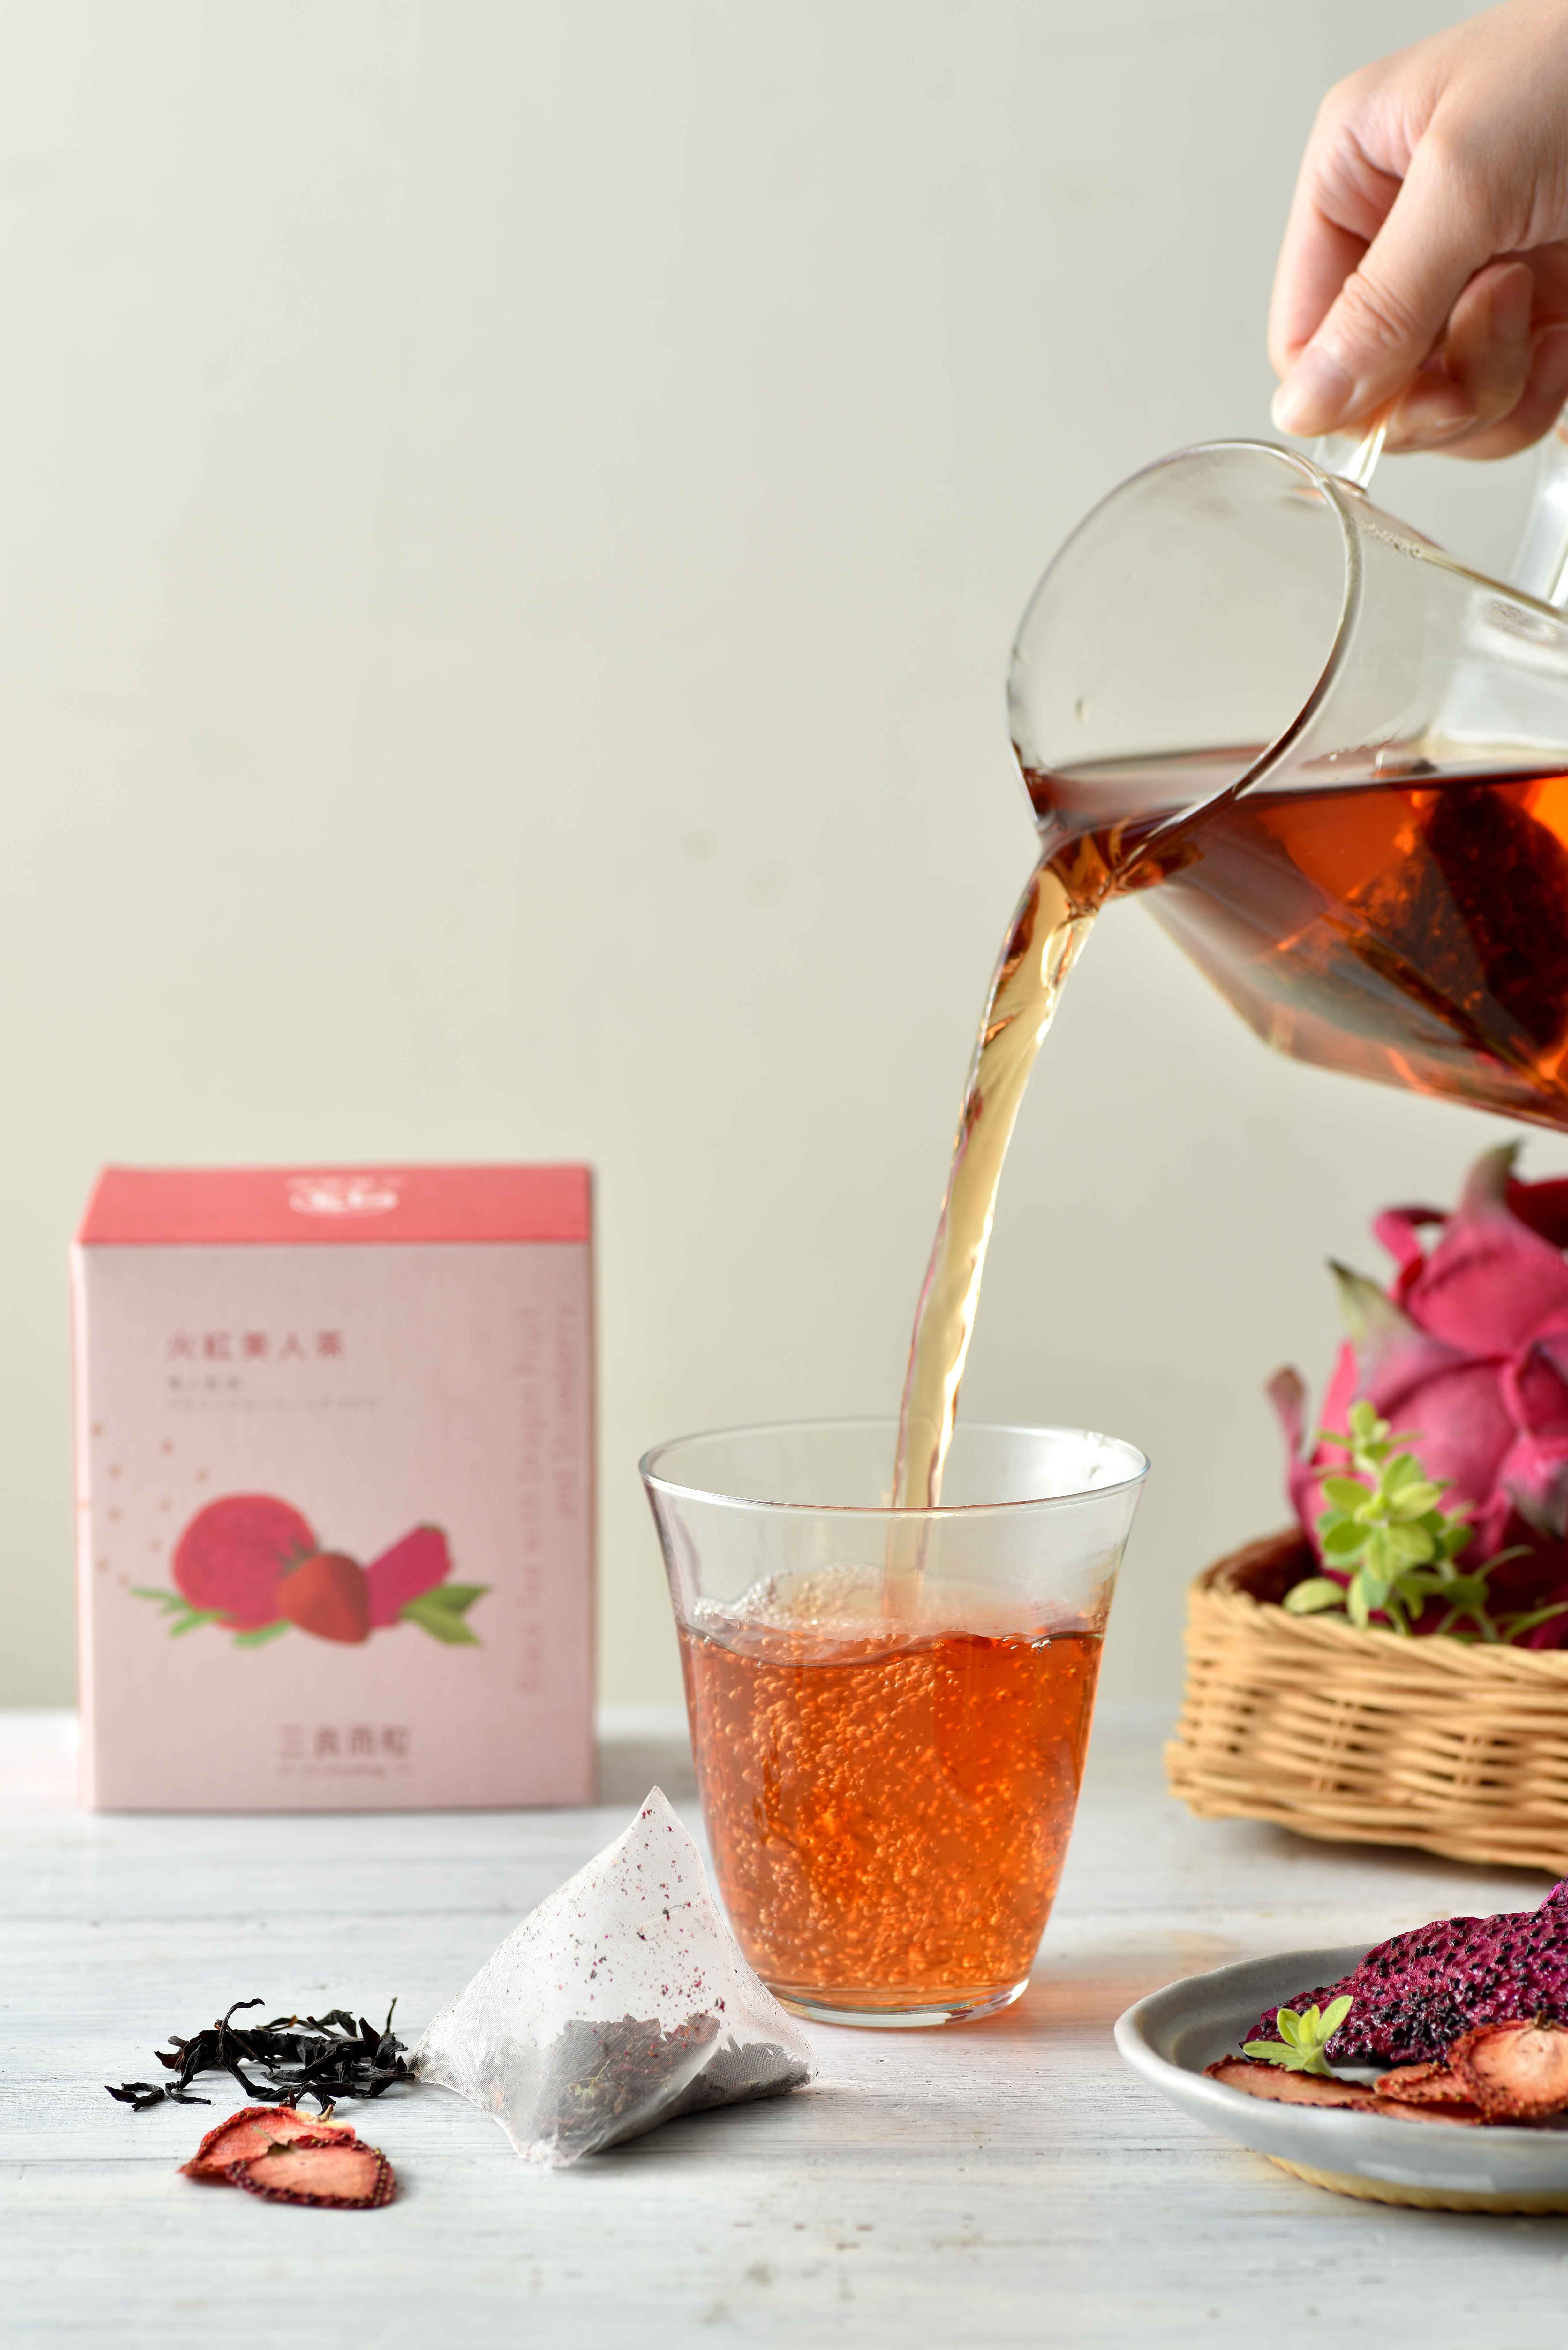 低溫烘焙乾燥的草莓、紅龍果，獨特果乾香氣與色澤，
<br />搭配國內茶農種植享譽國際精選優質紅茶；邀您一起品味在地果茶香。